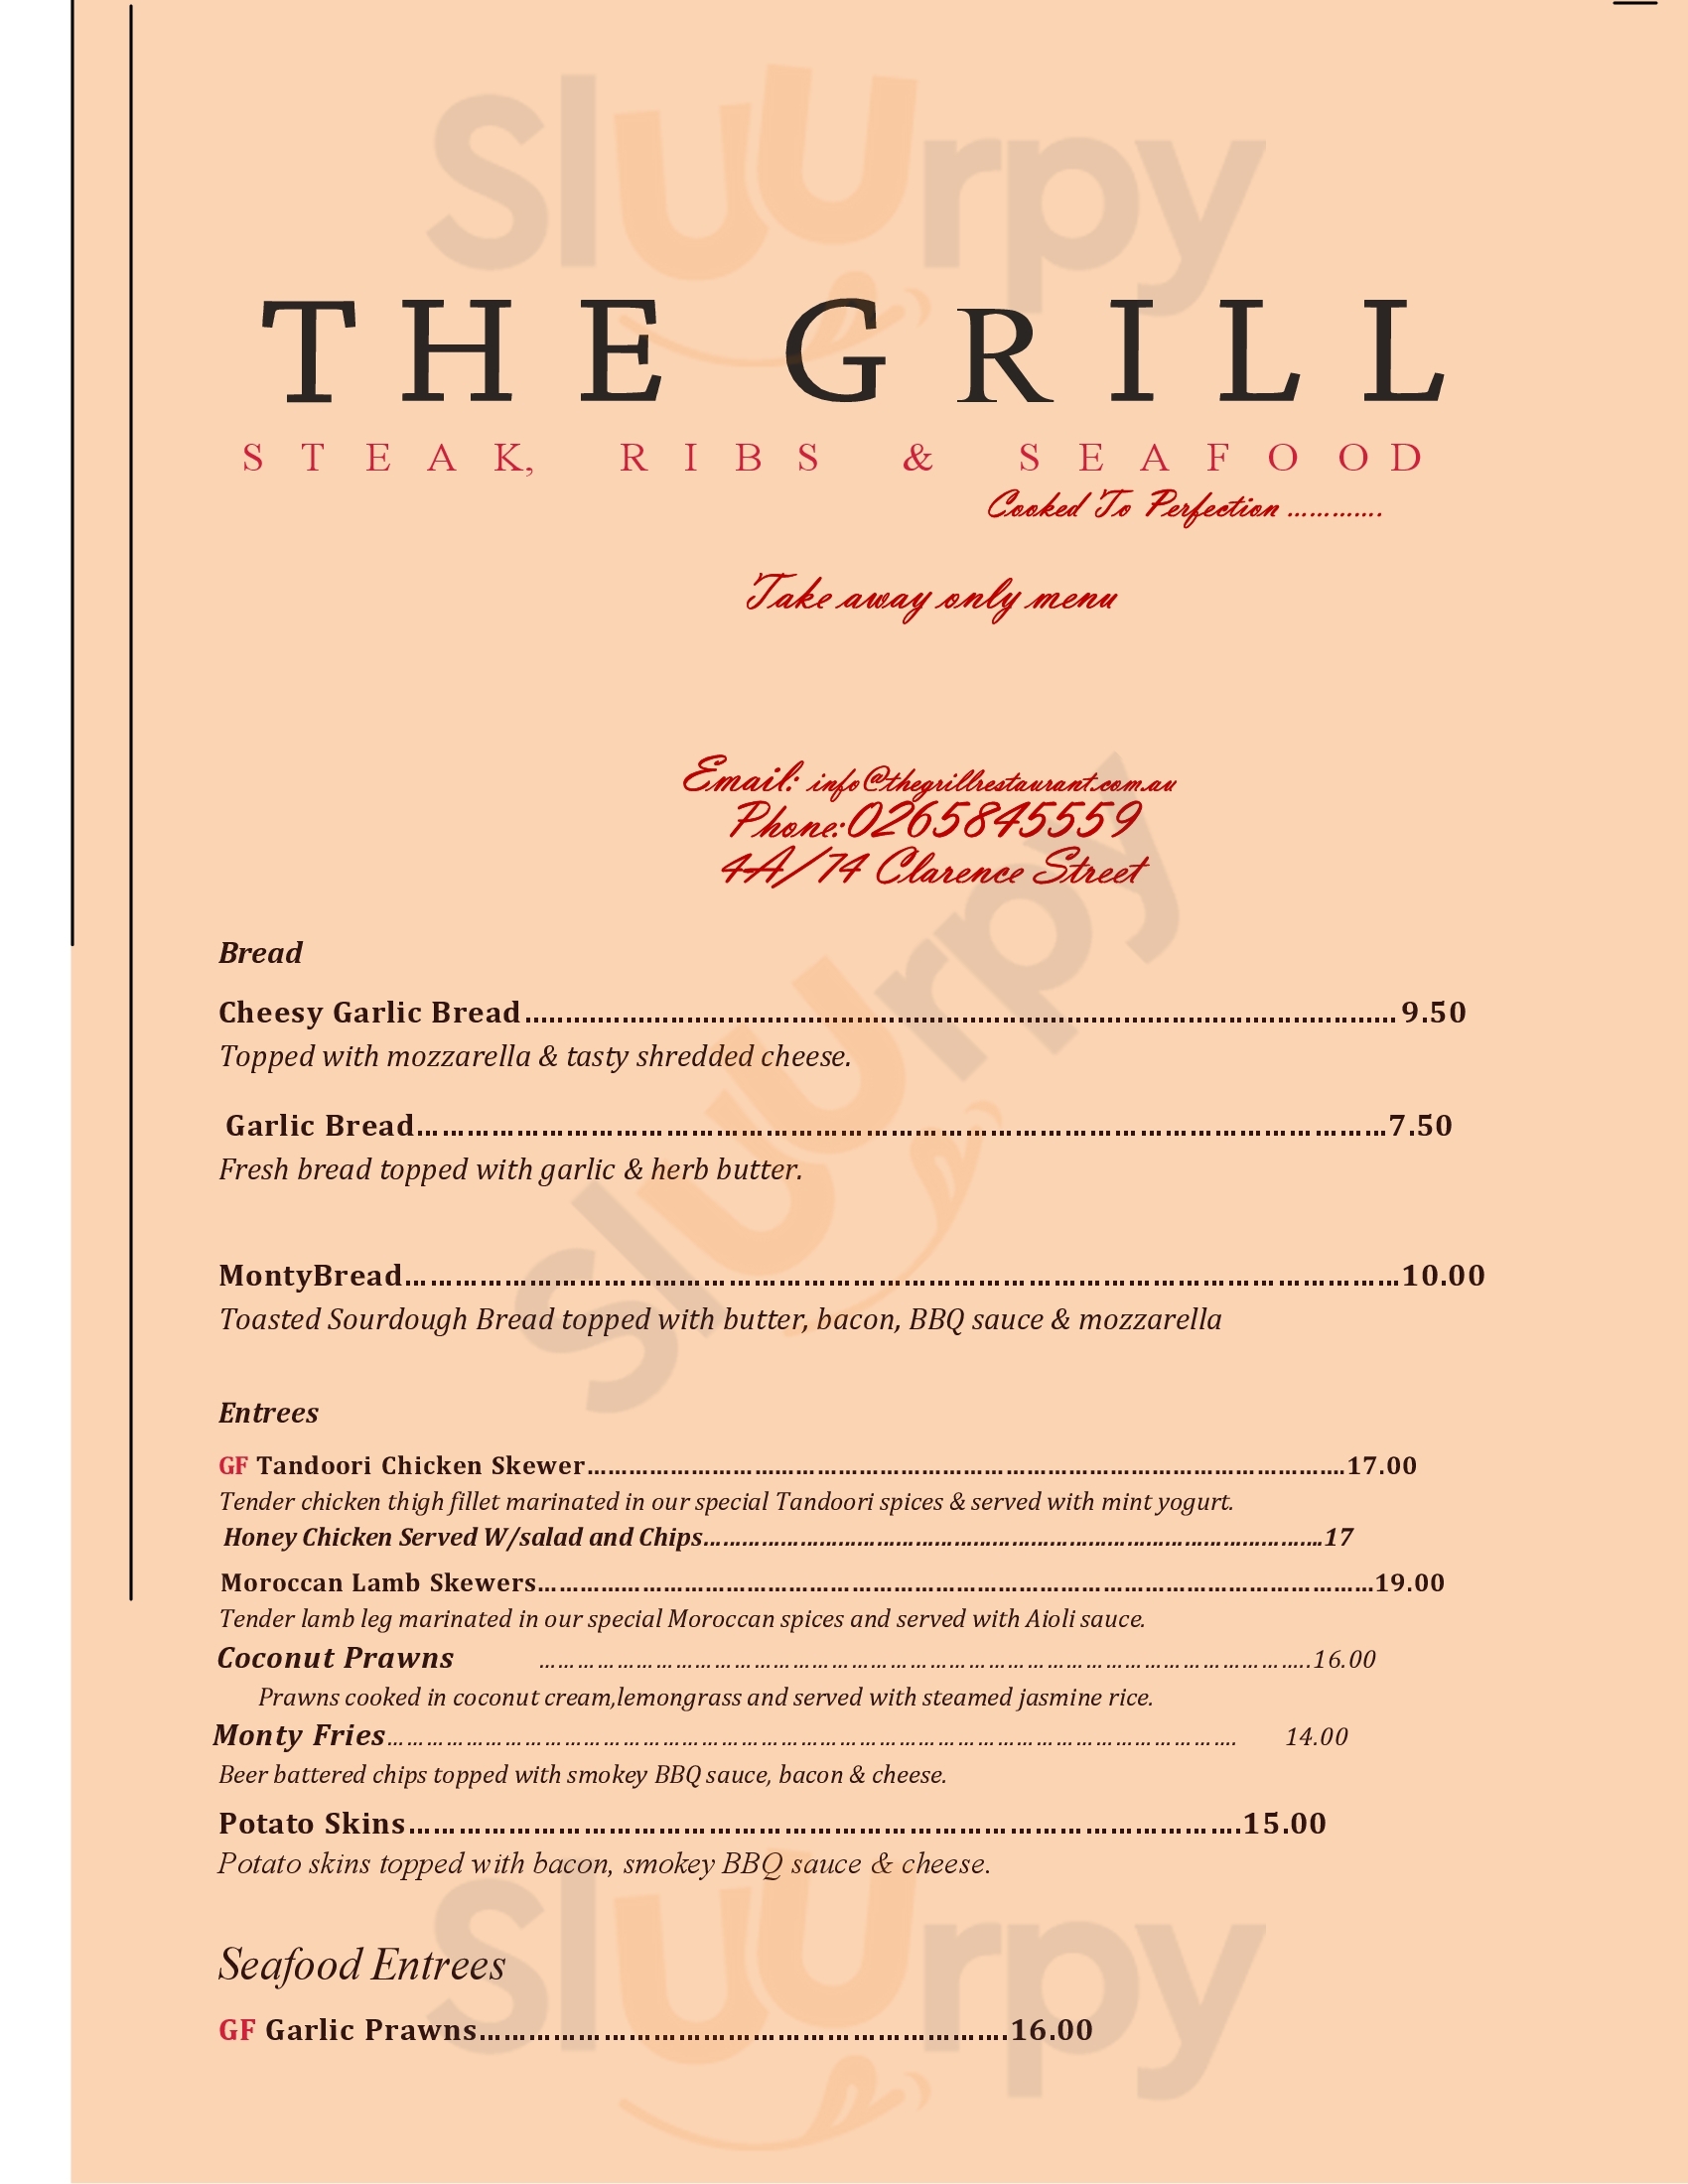 The Grill Steak, Ribs & Seafood Port Macquarie Menu - 1